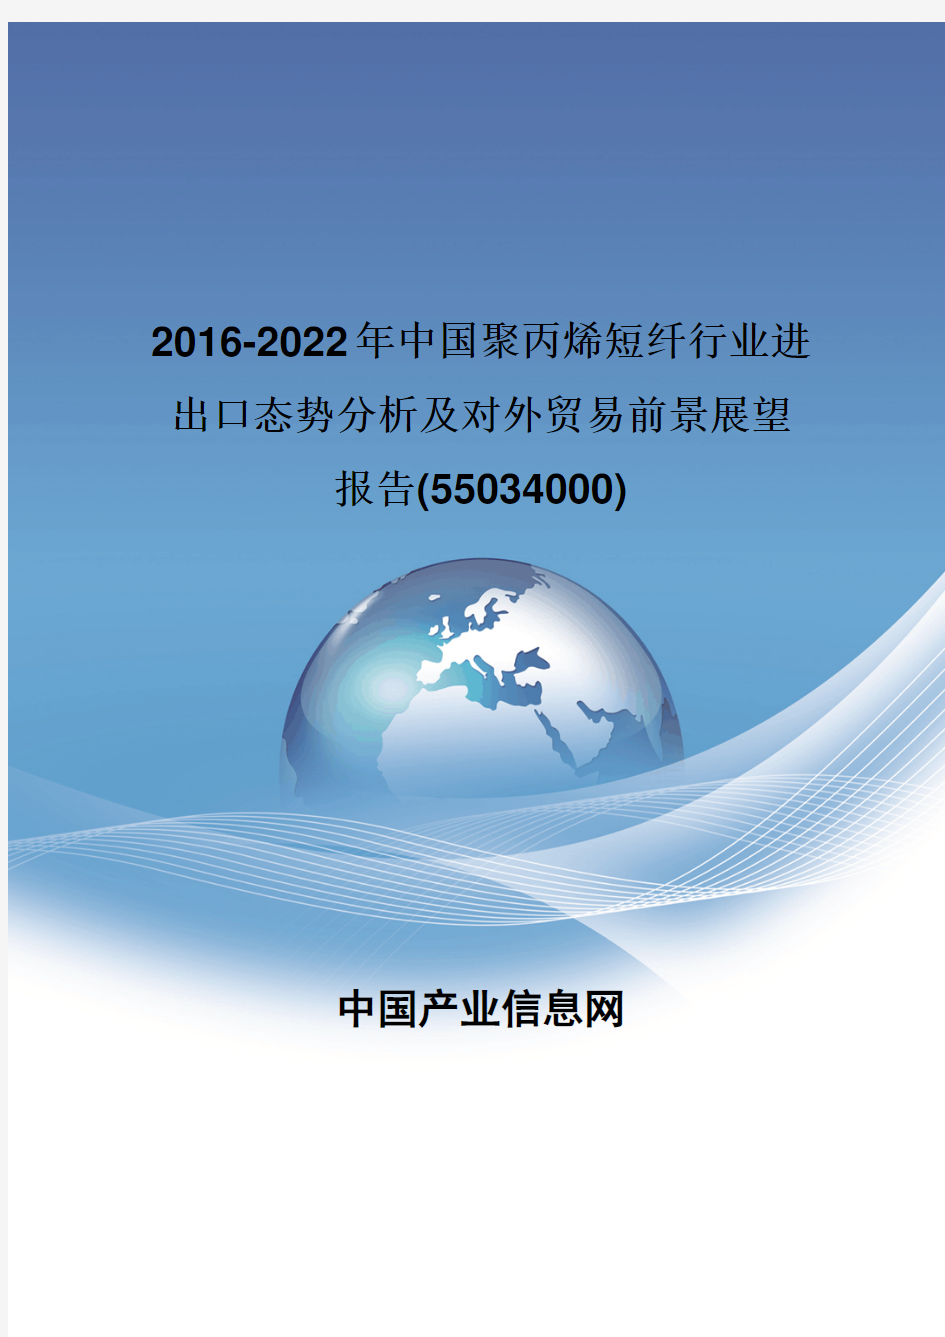 2016-2022年中国聚丙烯短纤行业进出口态势分析报告(55034000)